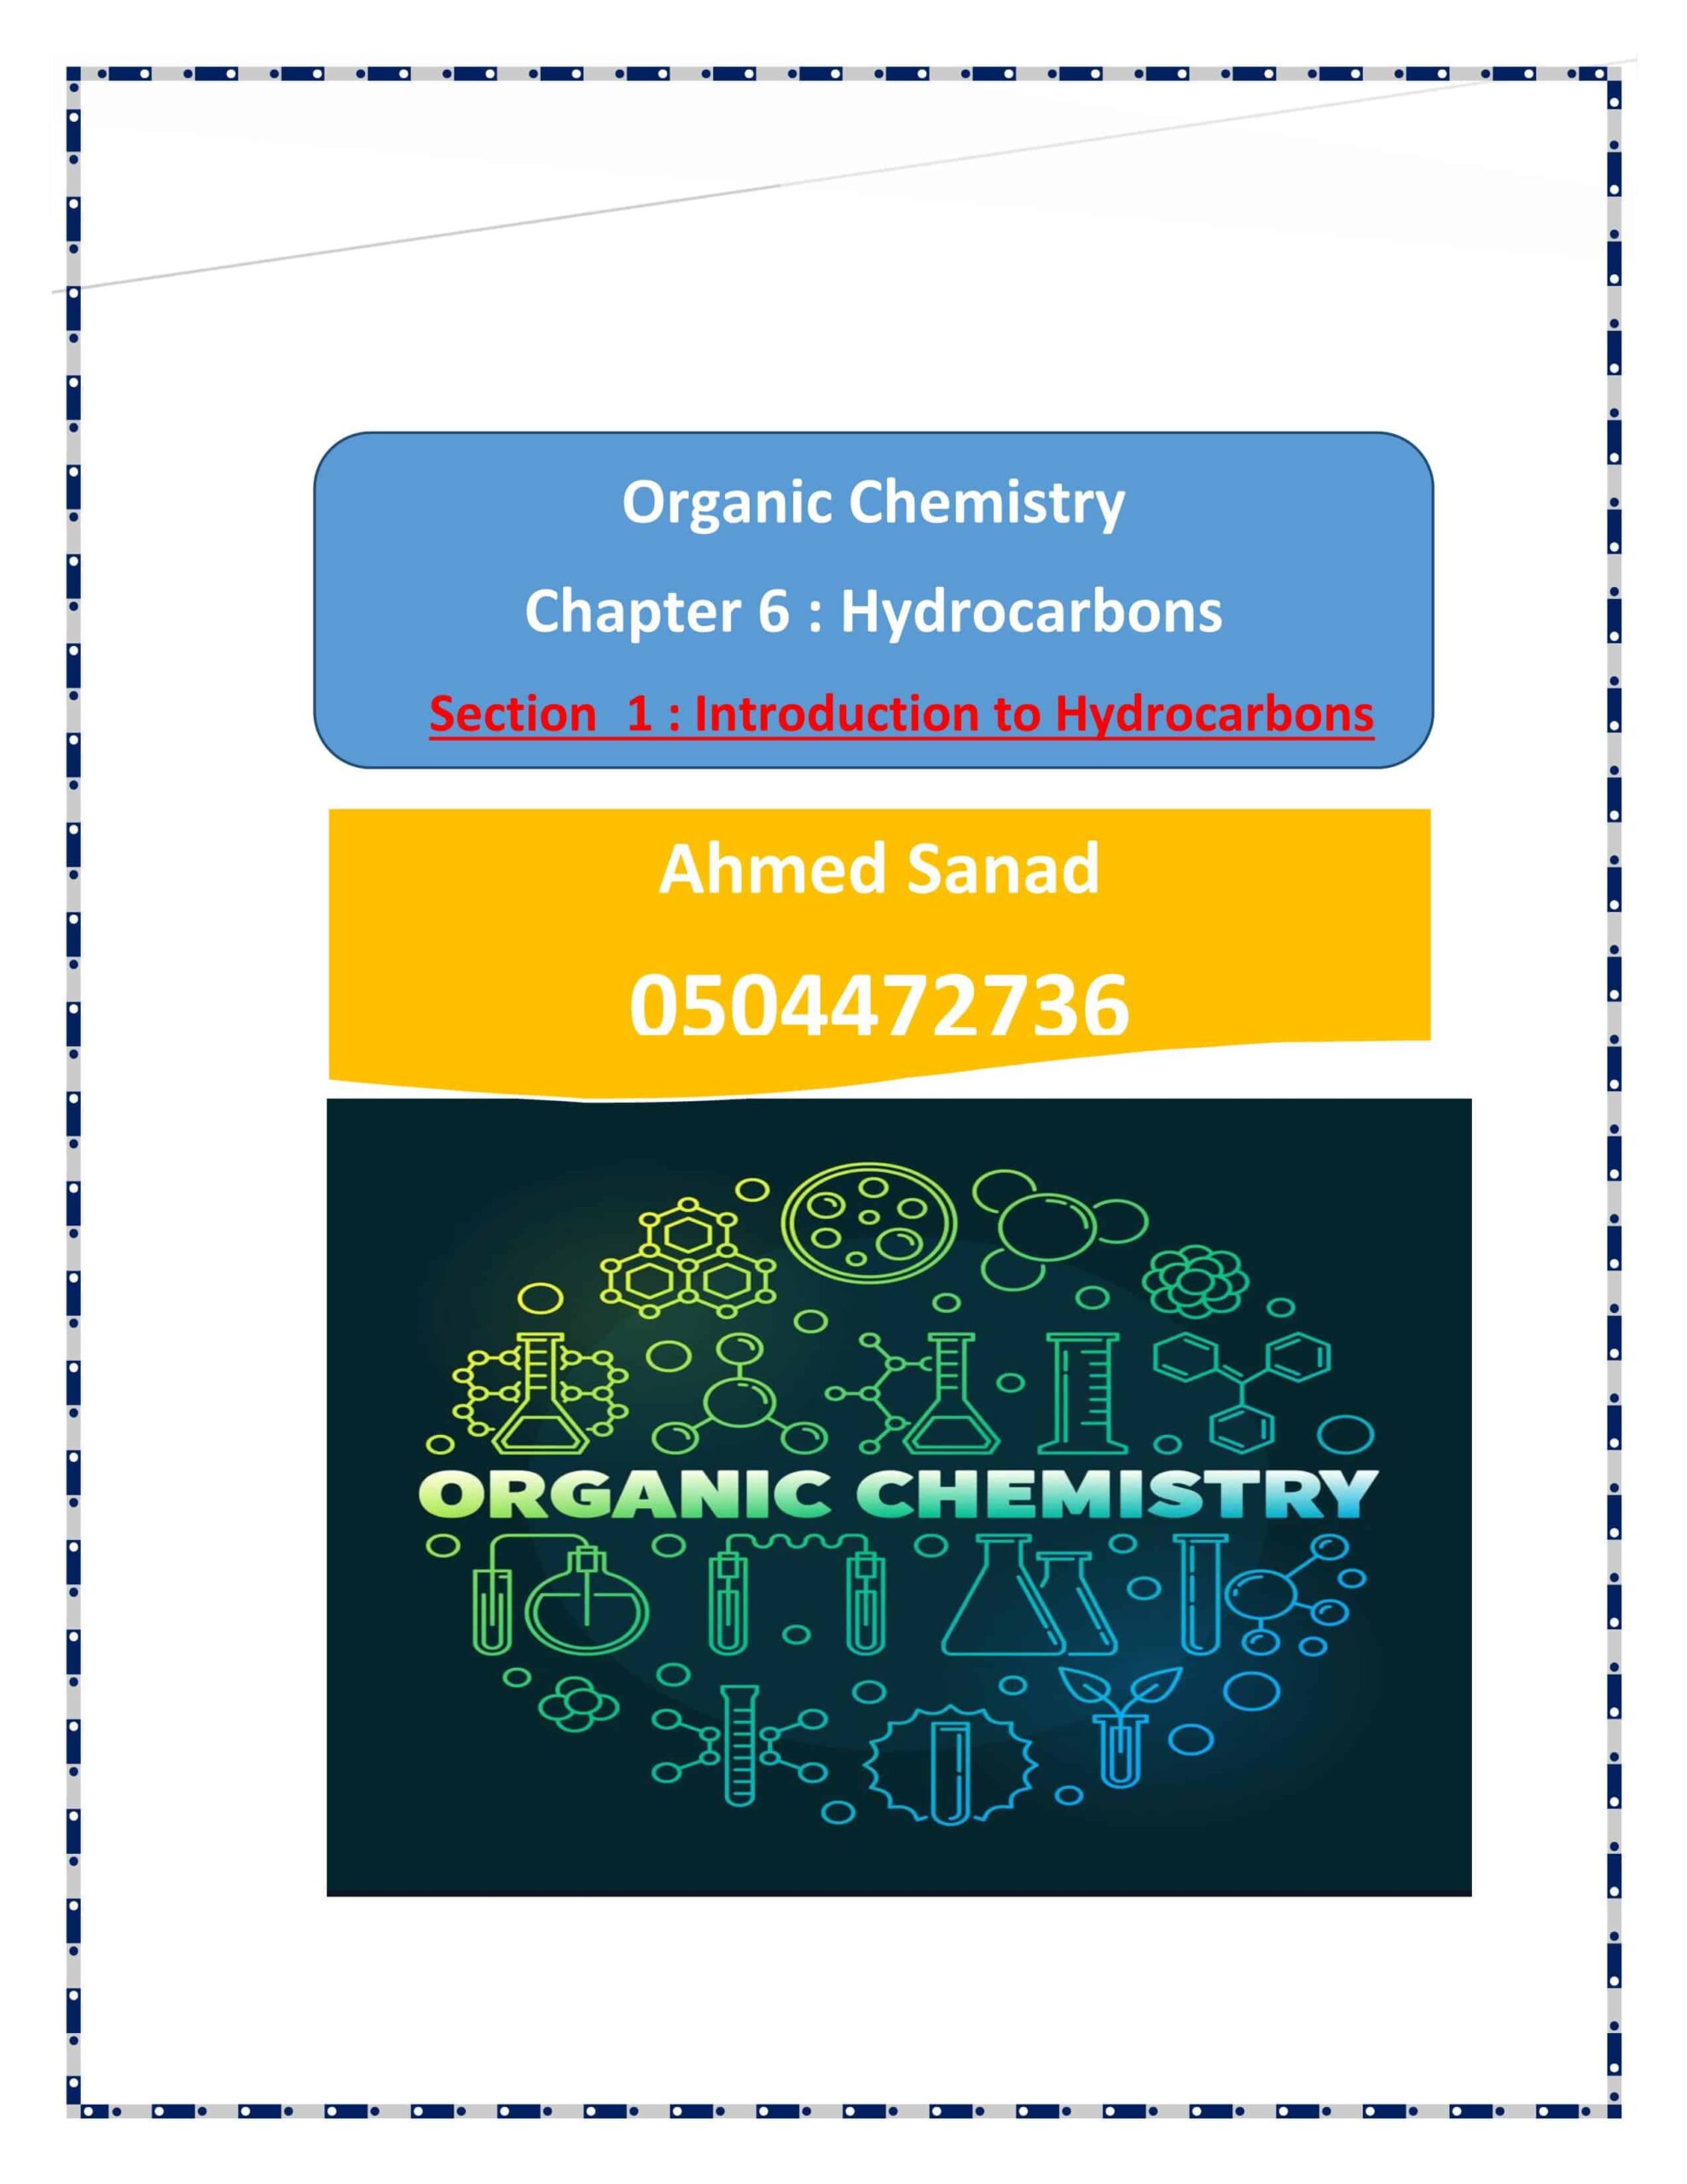 ملخص وأوراق عمل introduction to Hydrocarbons الكيمياء الصف الثاني عشر متقدم